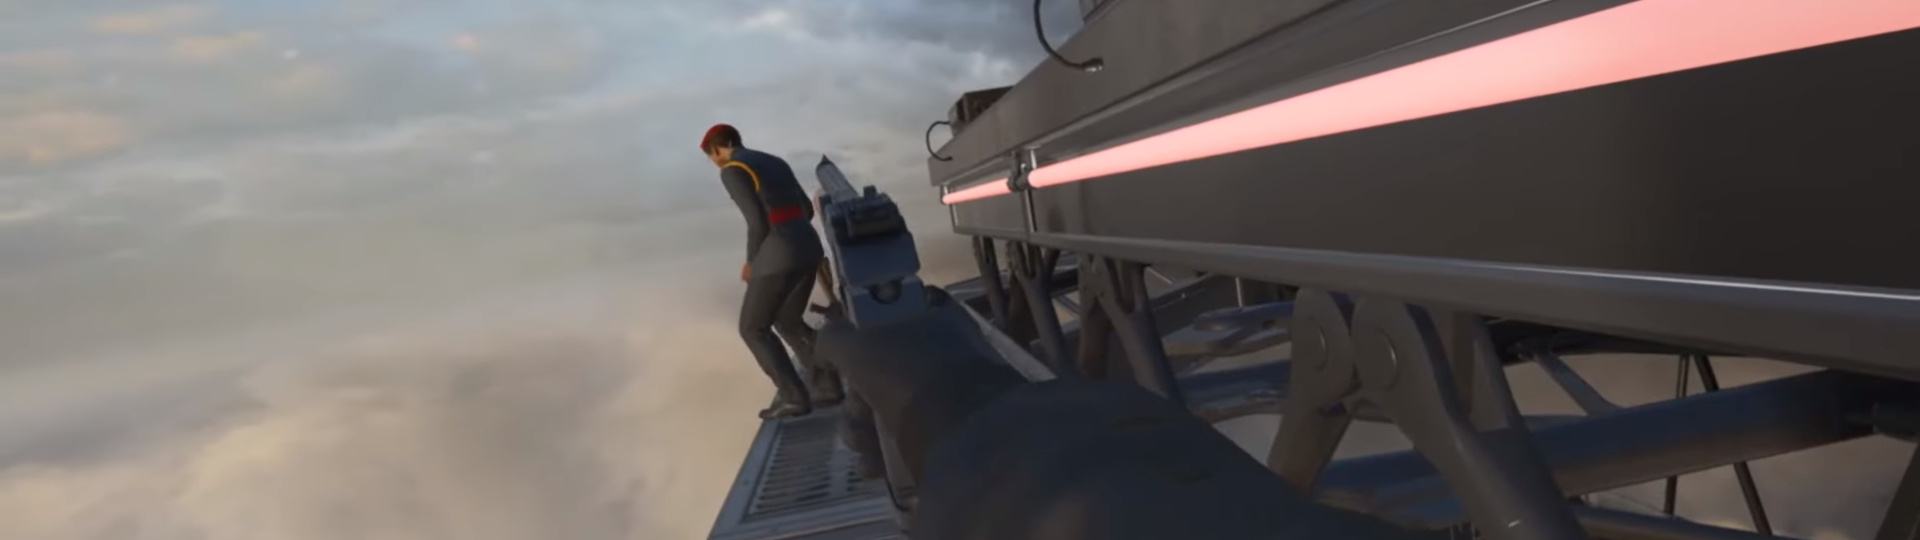 Hitman 3 připomíná, že bude hratelný ve VR | Videa